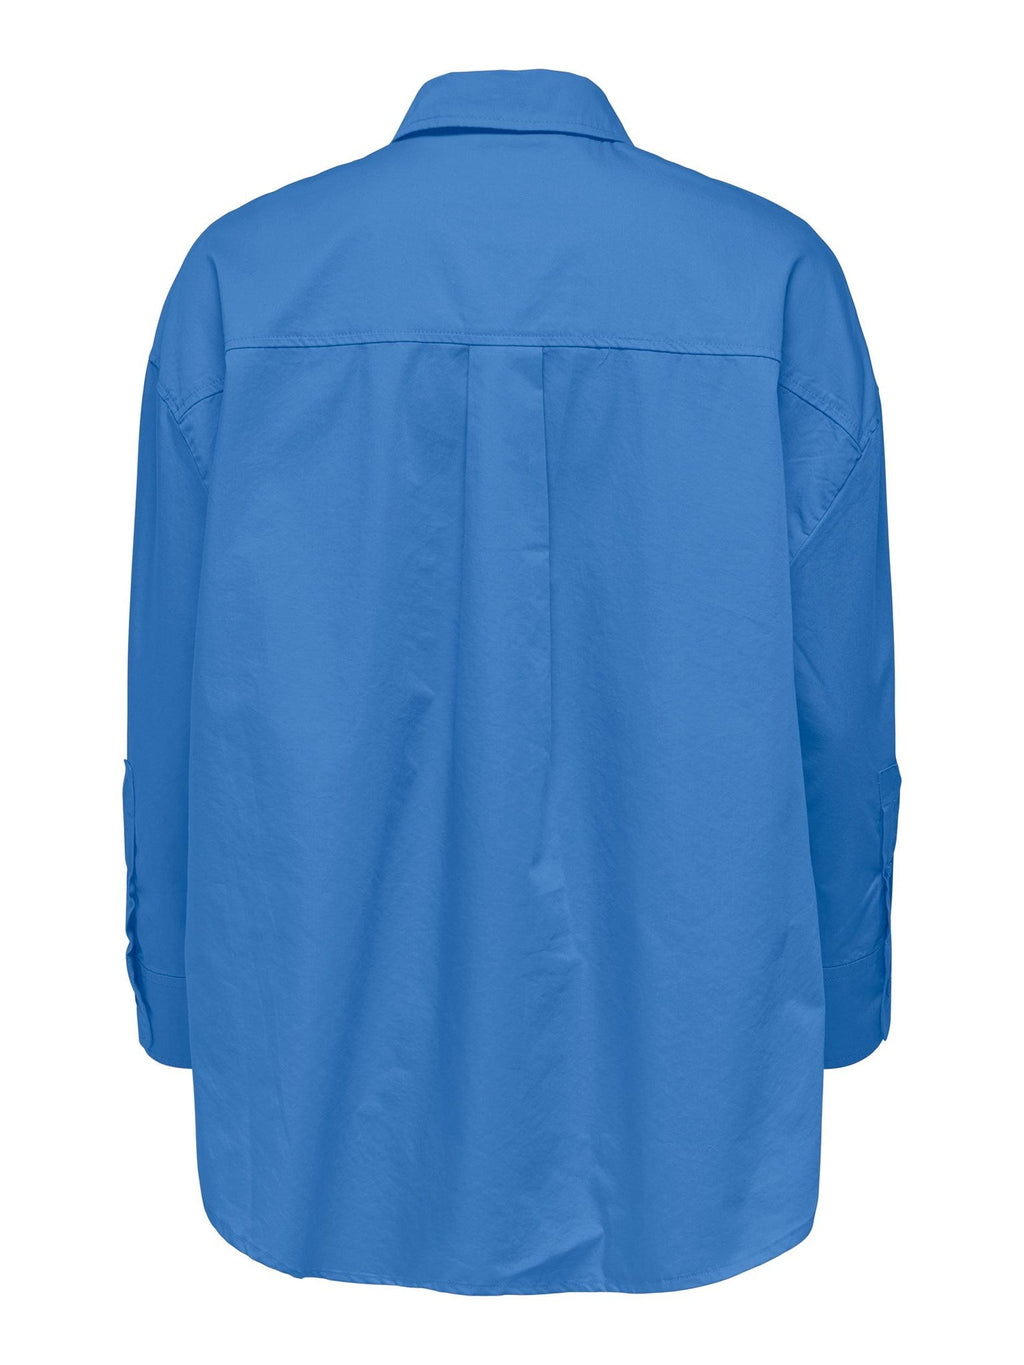 Corina Shirt - Bleu marine